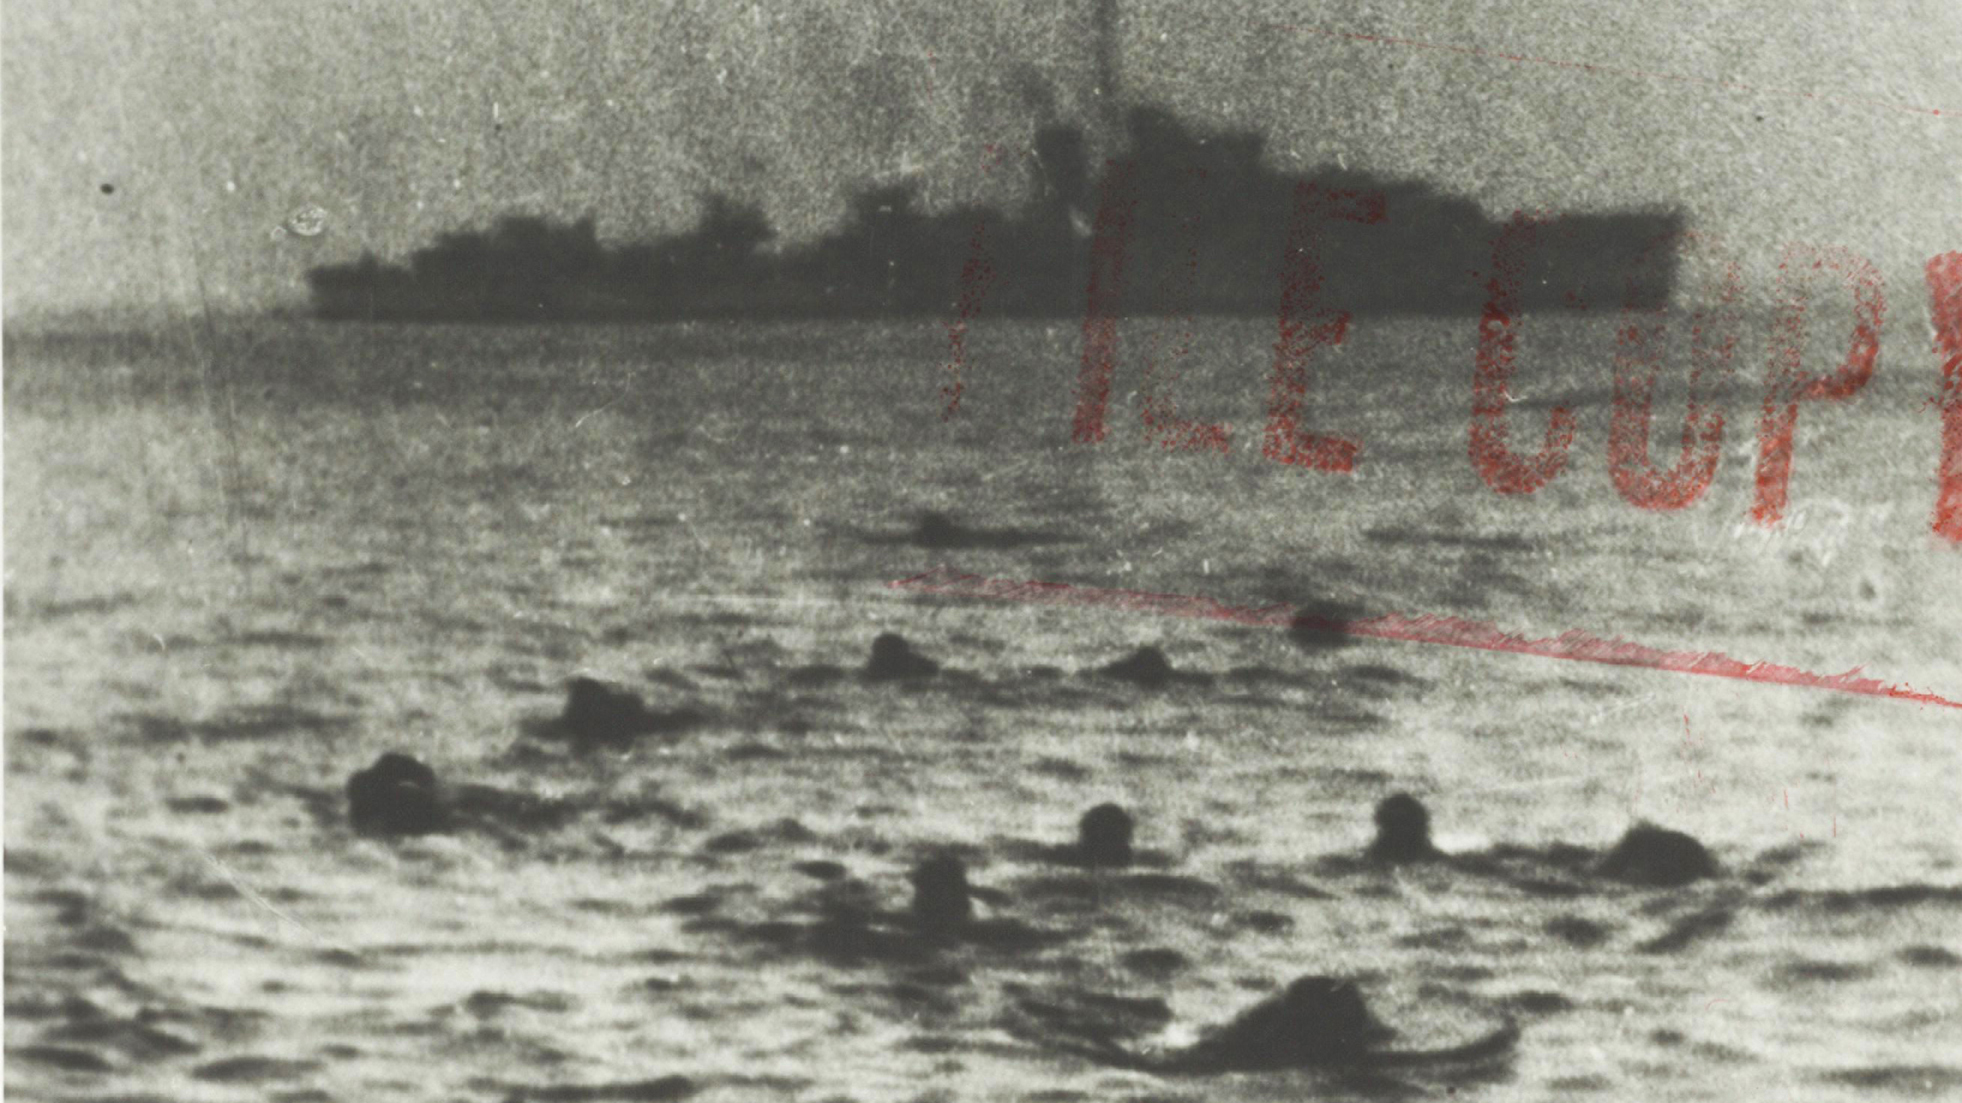 Diapositive - Les survivants du U-210 